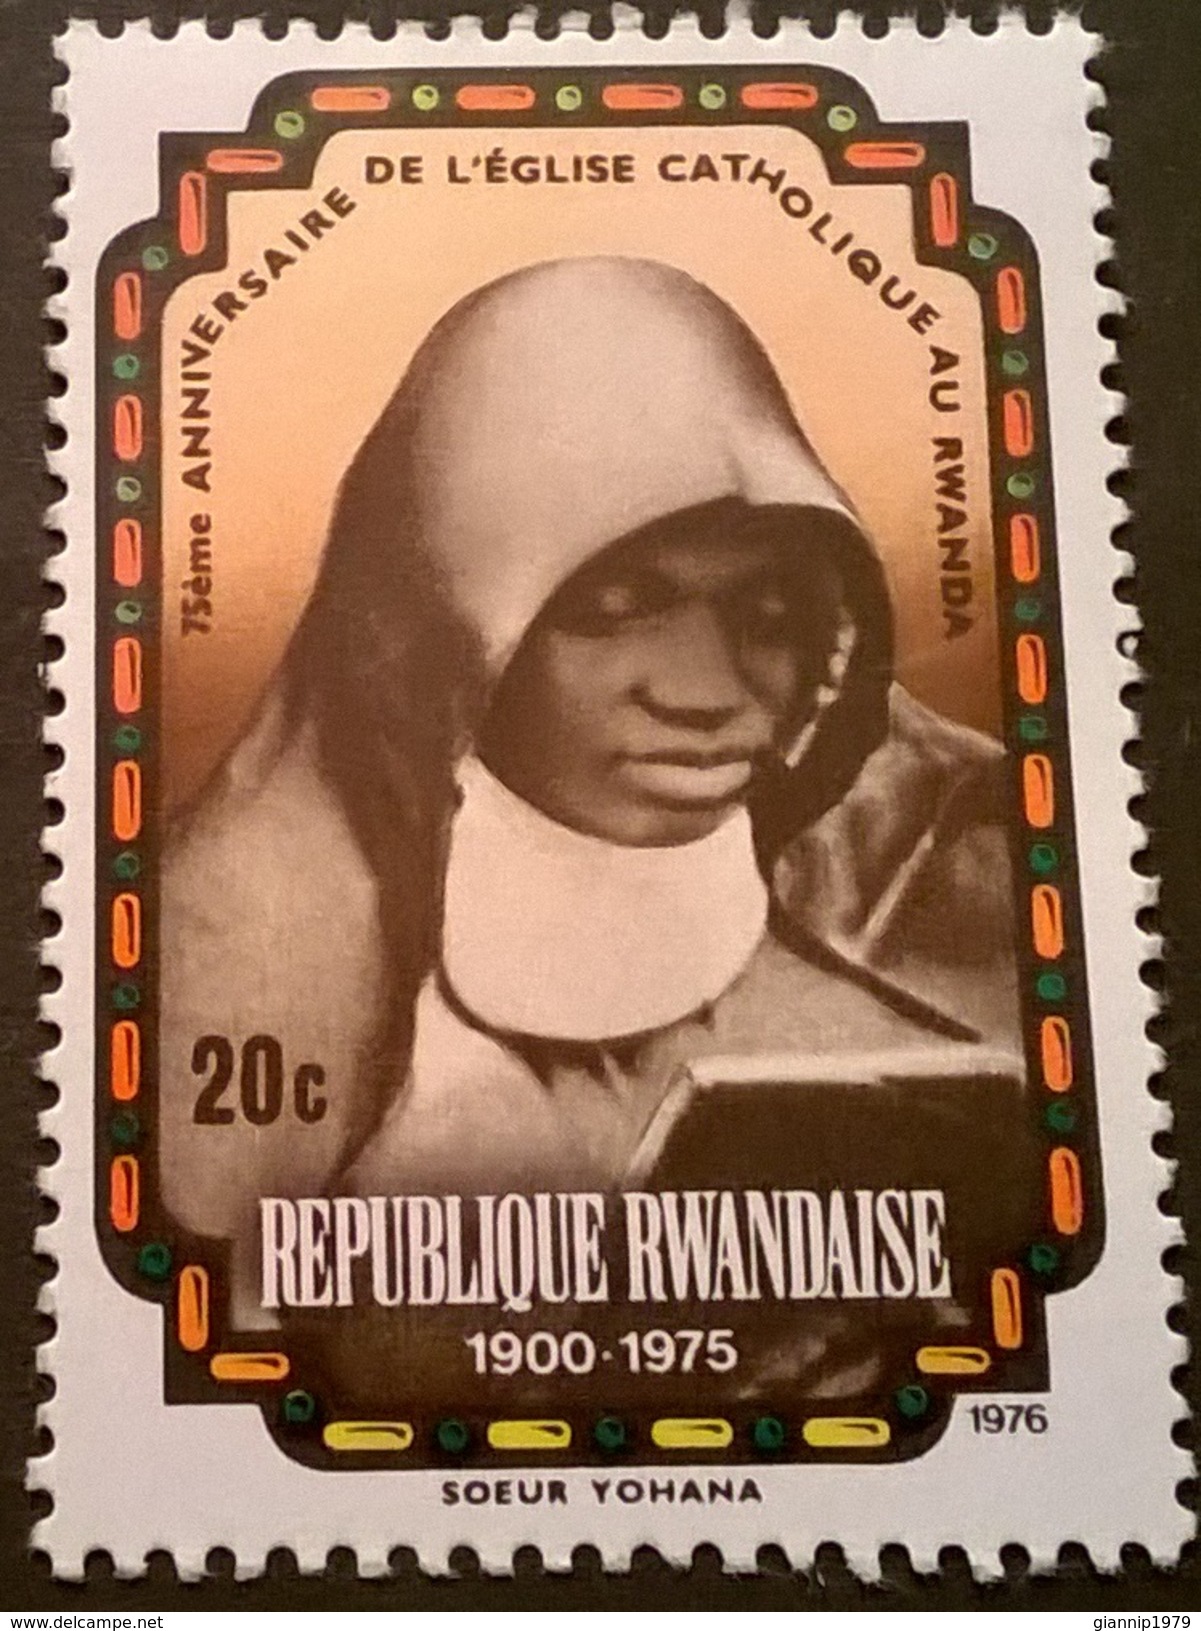 FRANCOBOLLO REP. RWANDAISE 1976 MNH** RARO ANNIVERSARY OF CATTOLICESIMO IN RUANDA - 1970-1979